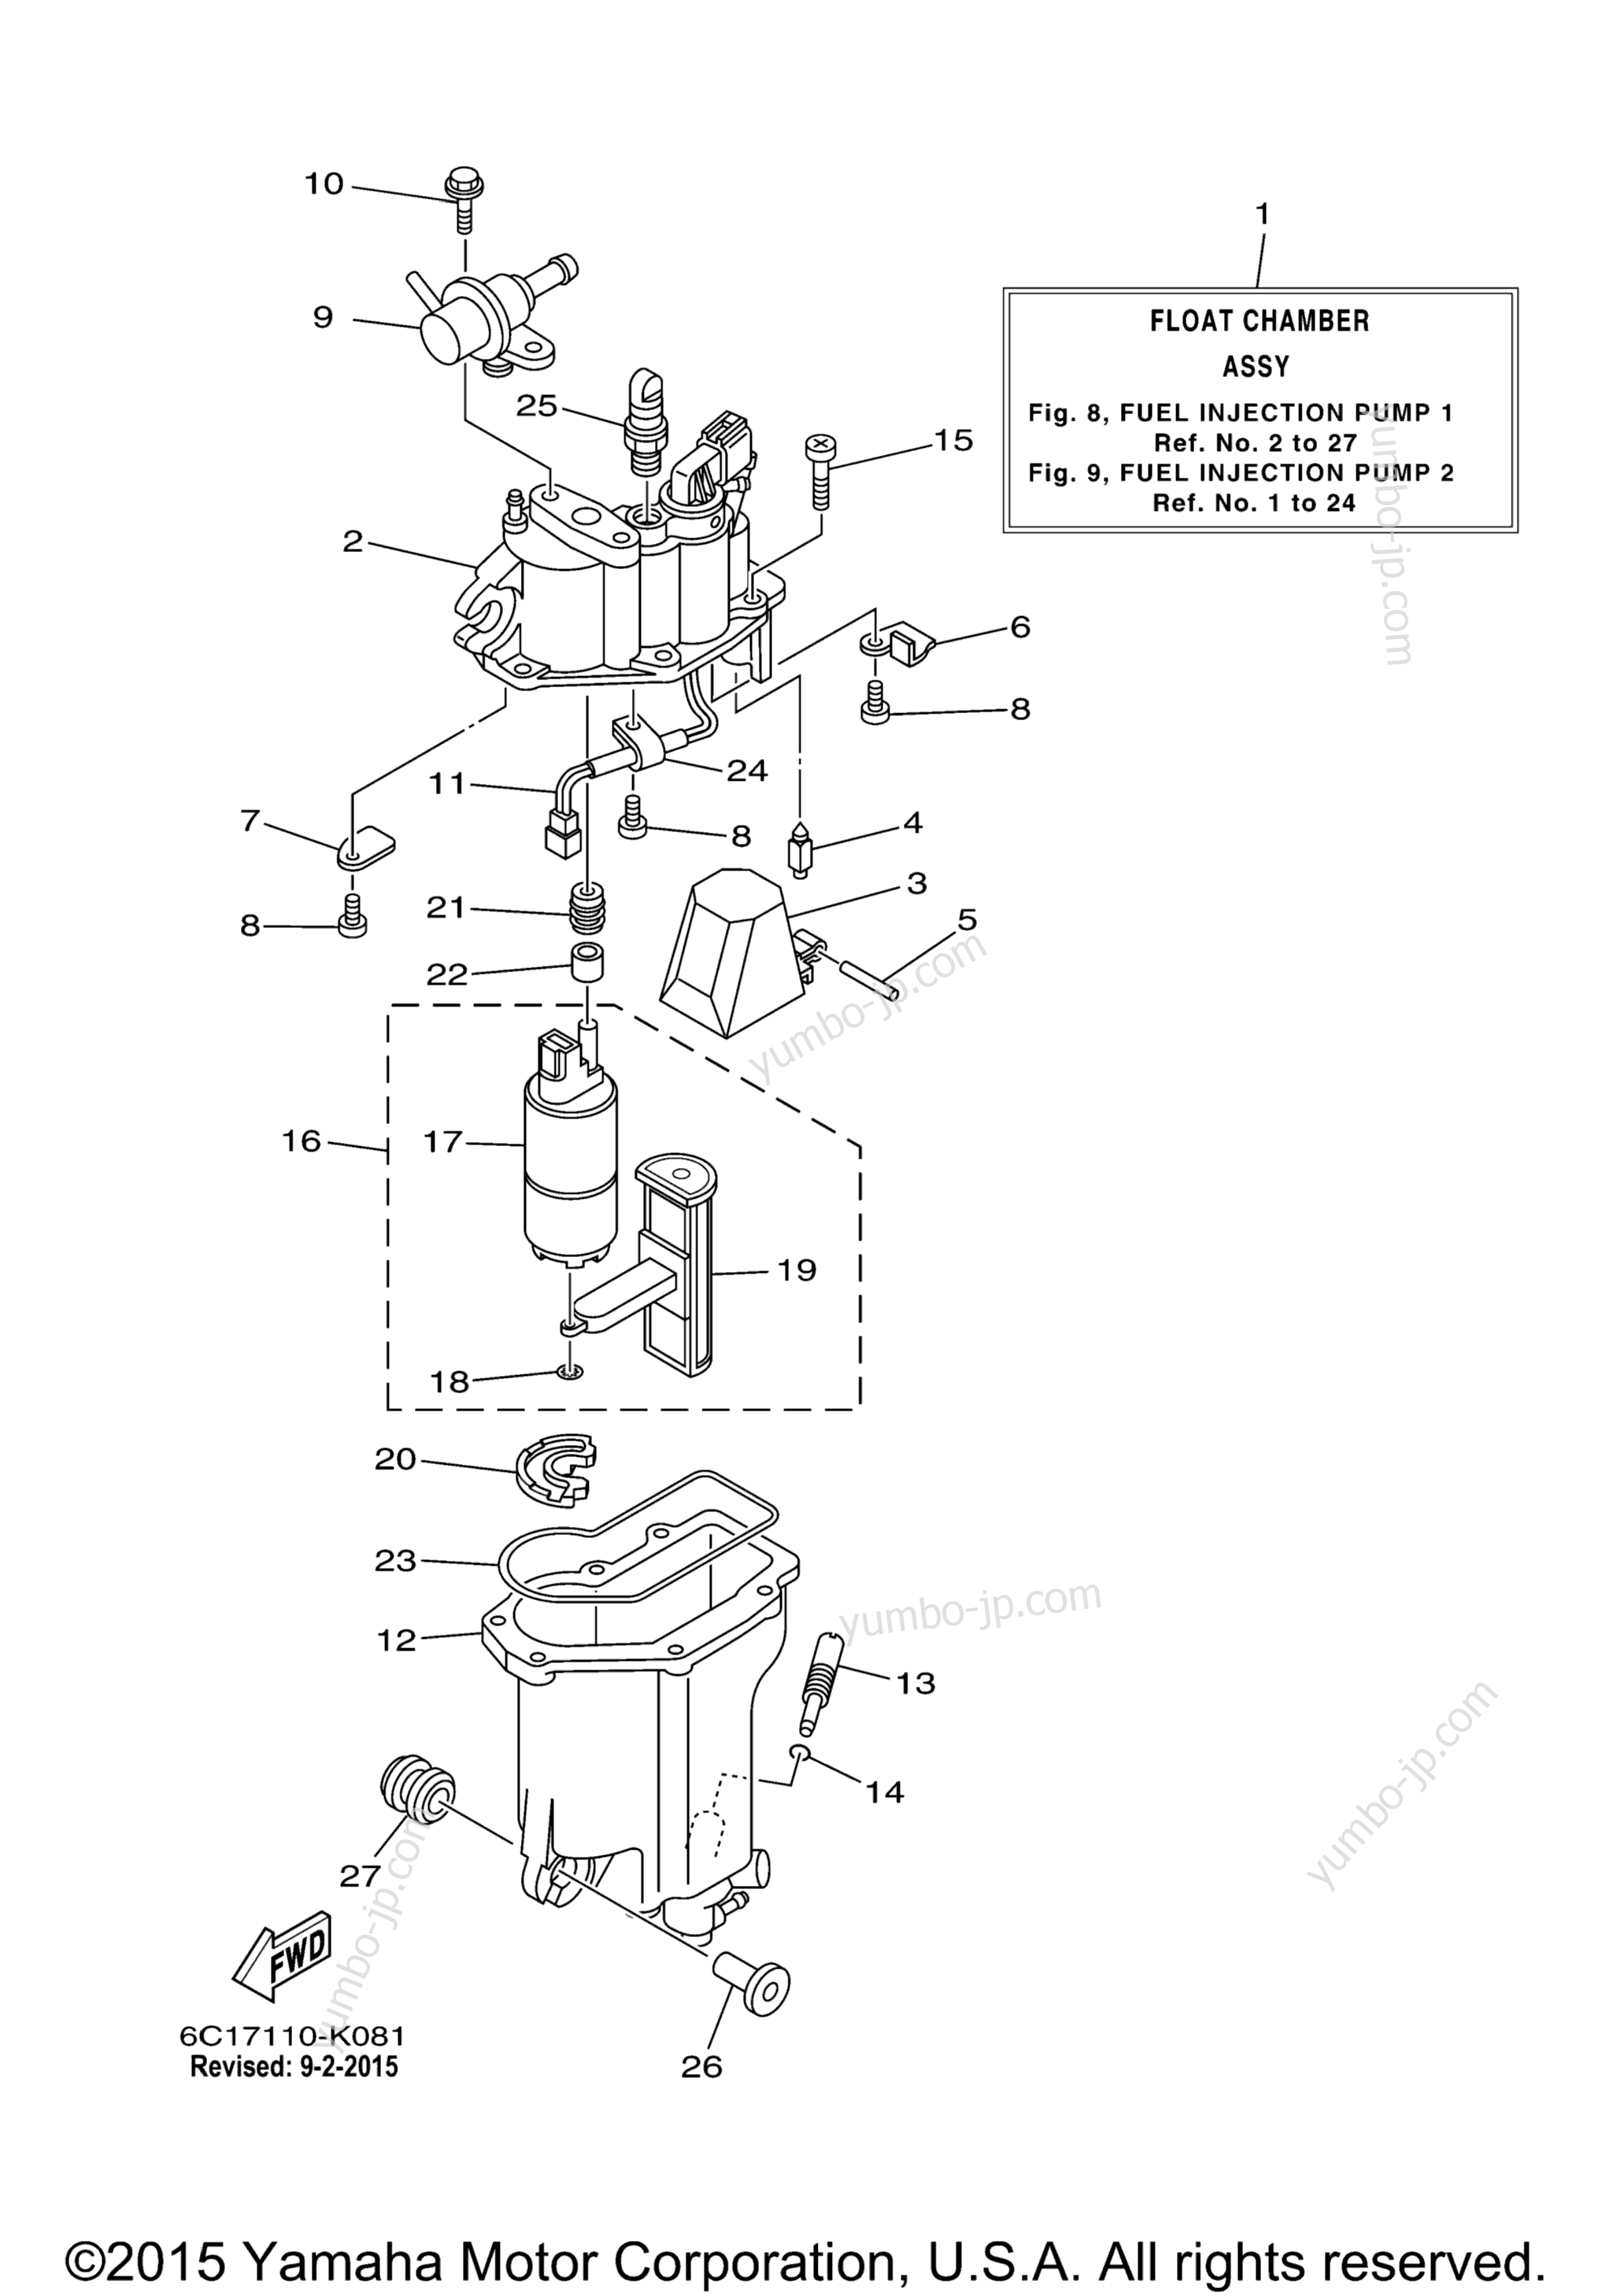 Fuel Injection Pump 1 для лодочных моторов YAMAHA T60TLR_041 (0411) 2006 г.